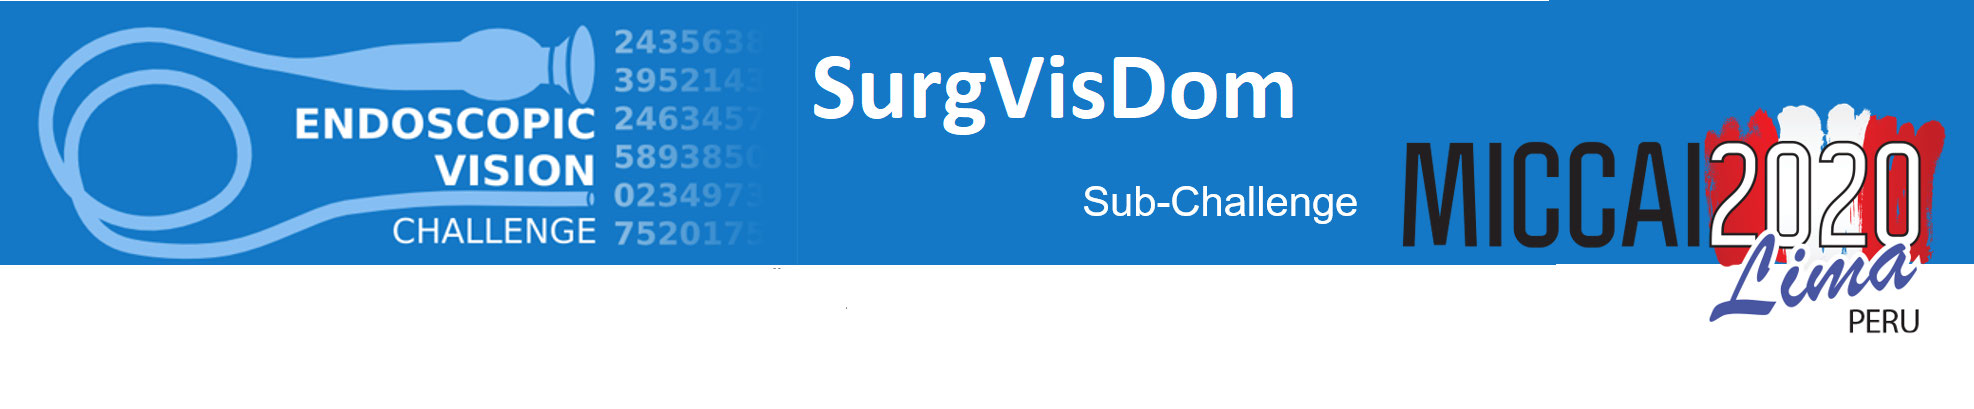 SurgVisDom Banner